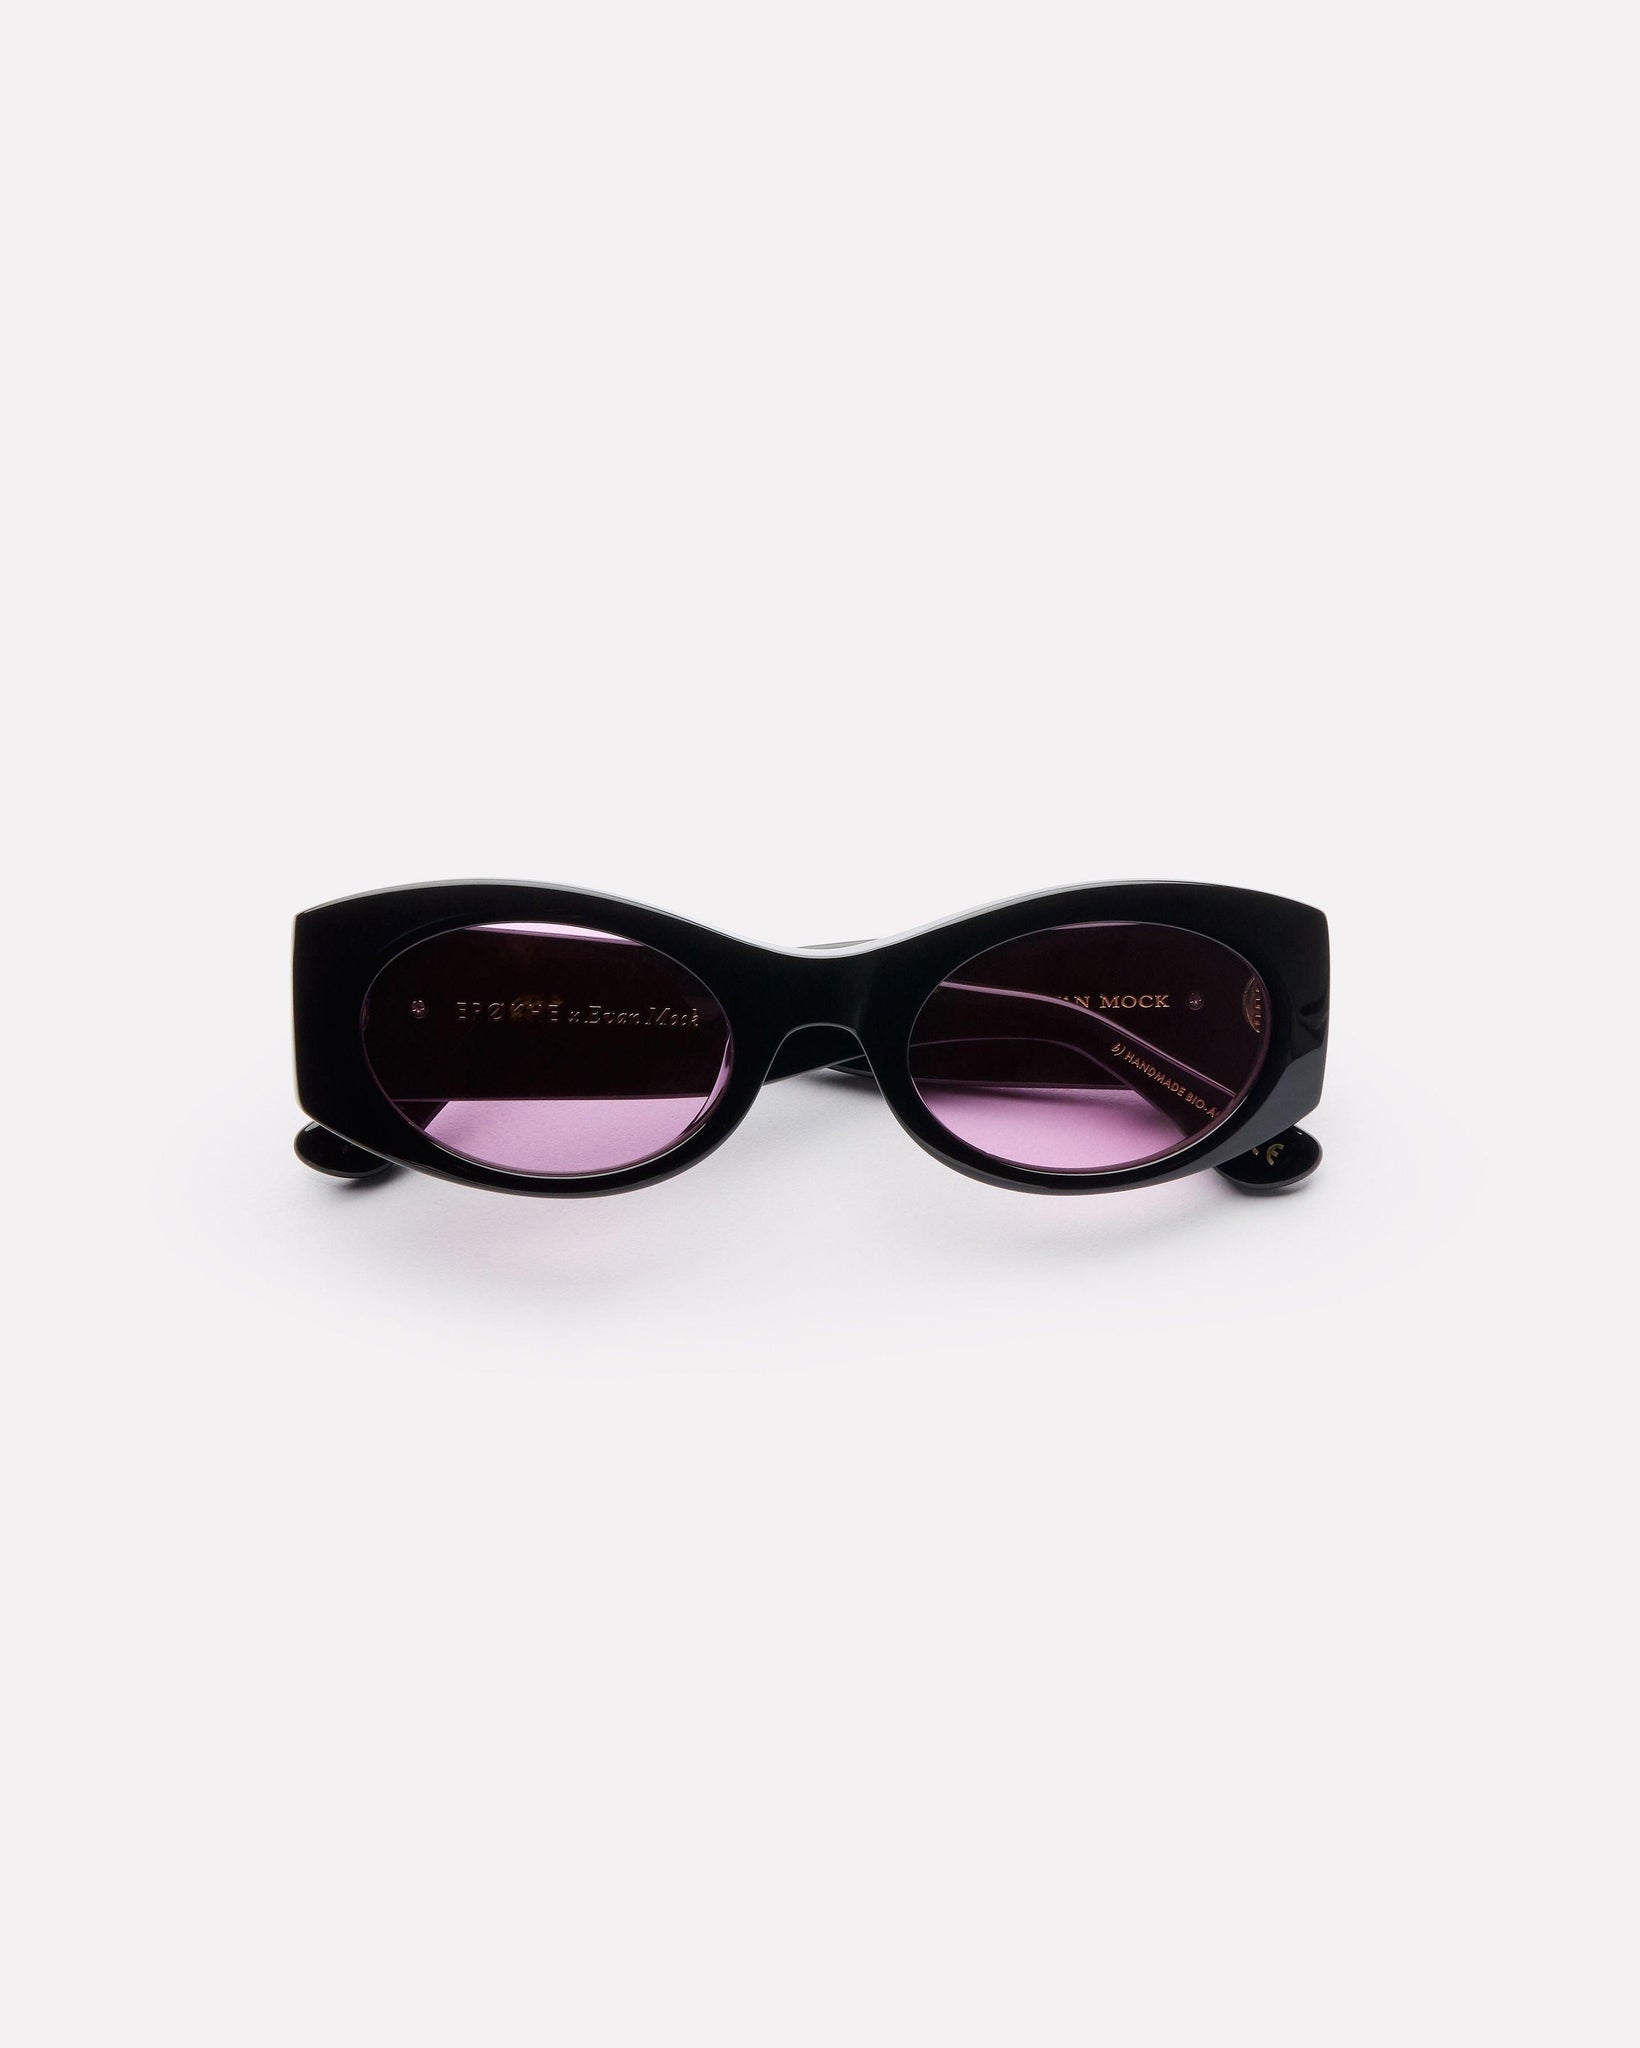 Suede - Black Polished / Velvet - Sunglasses - EPOKHE EYEWEAR